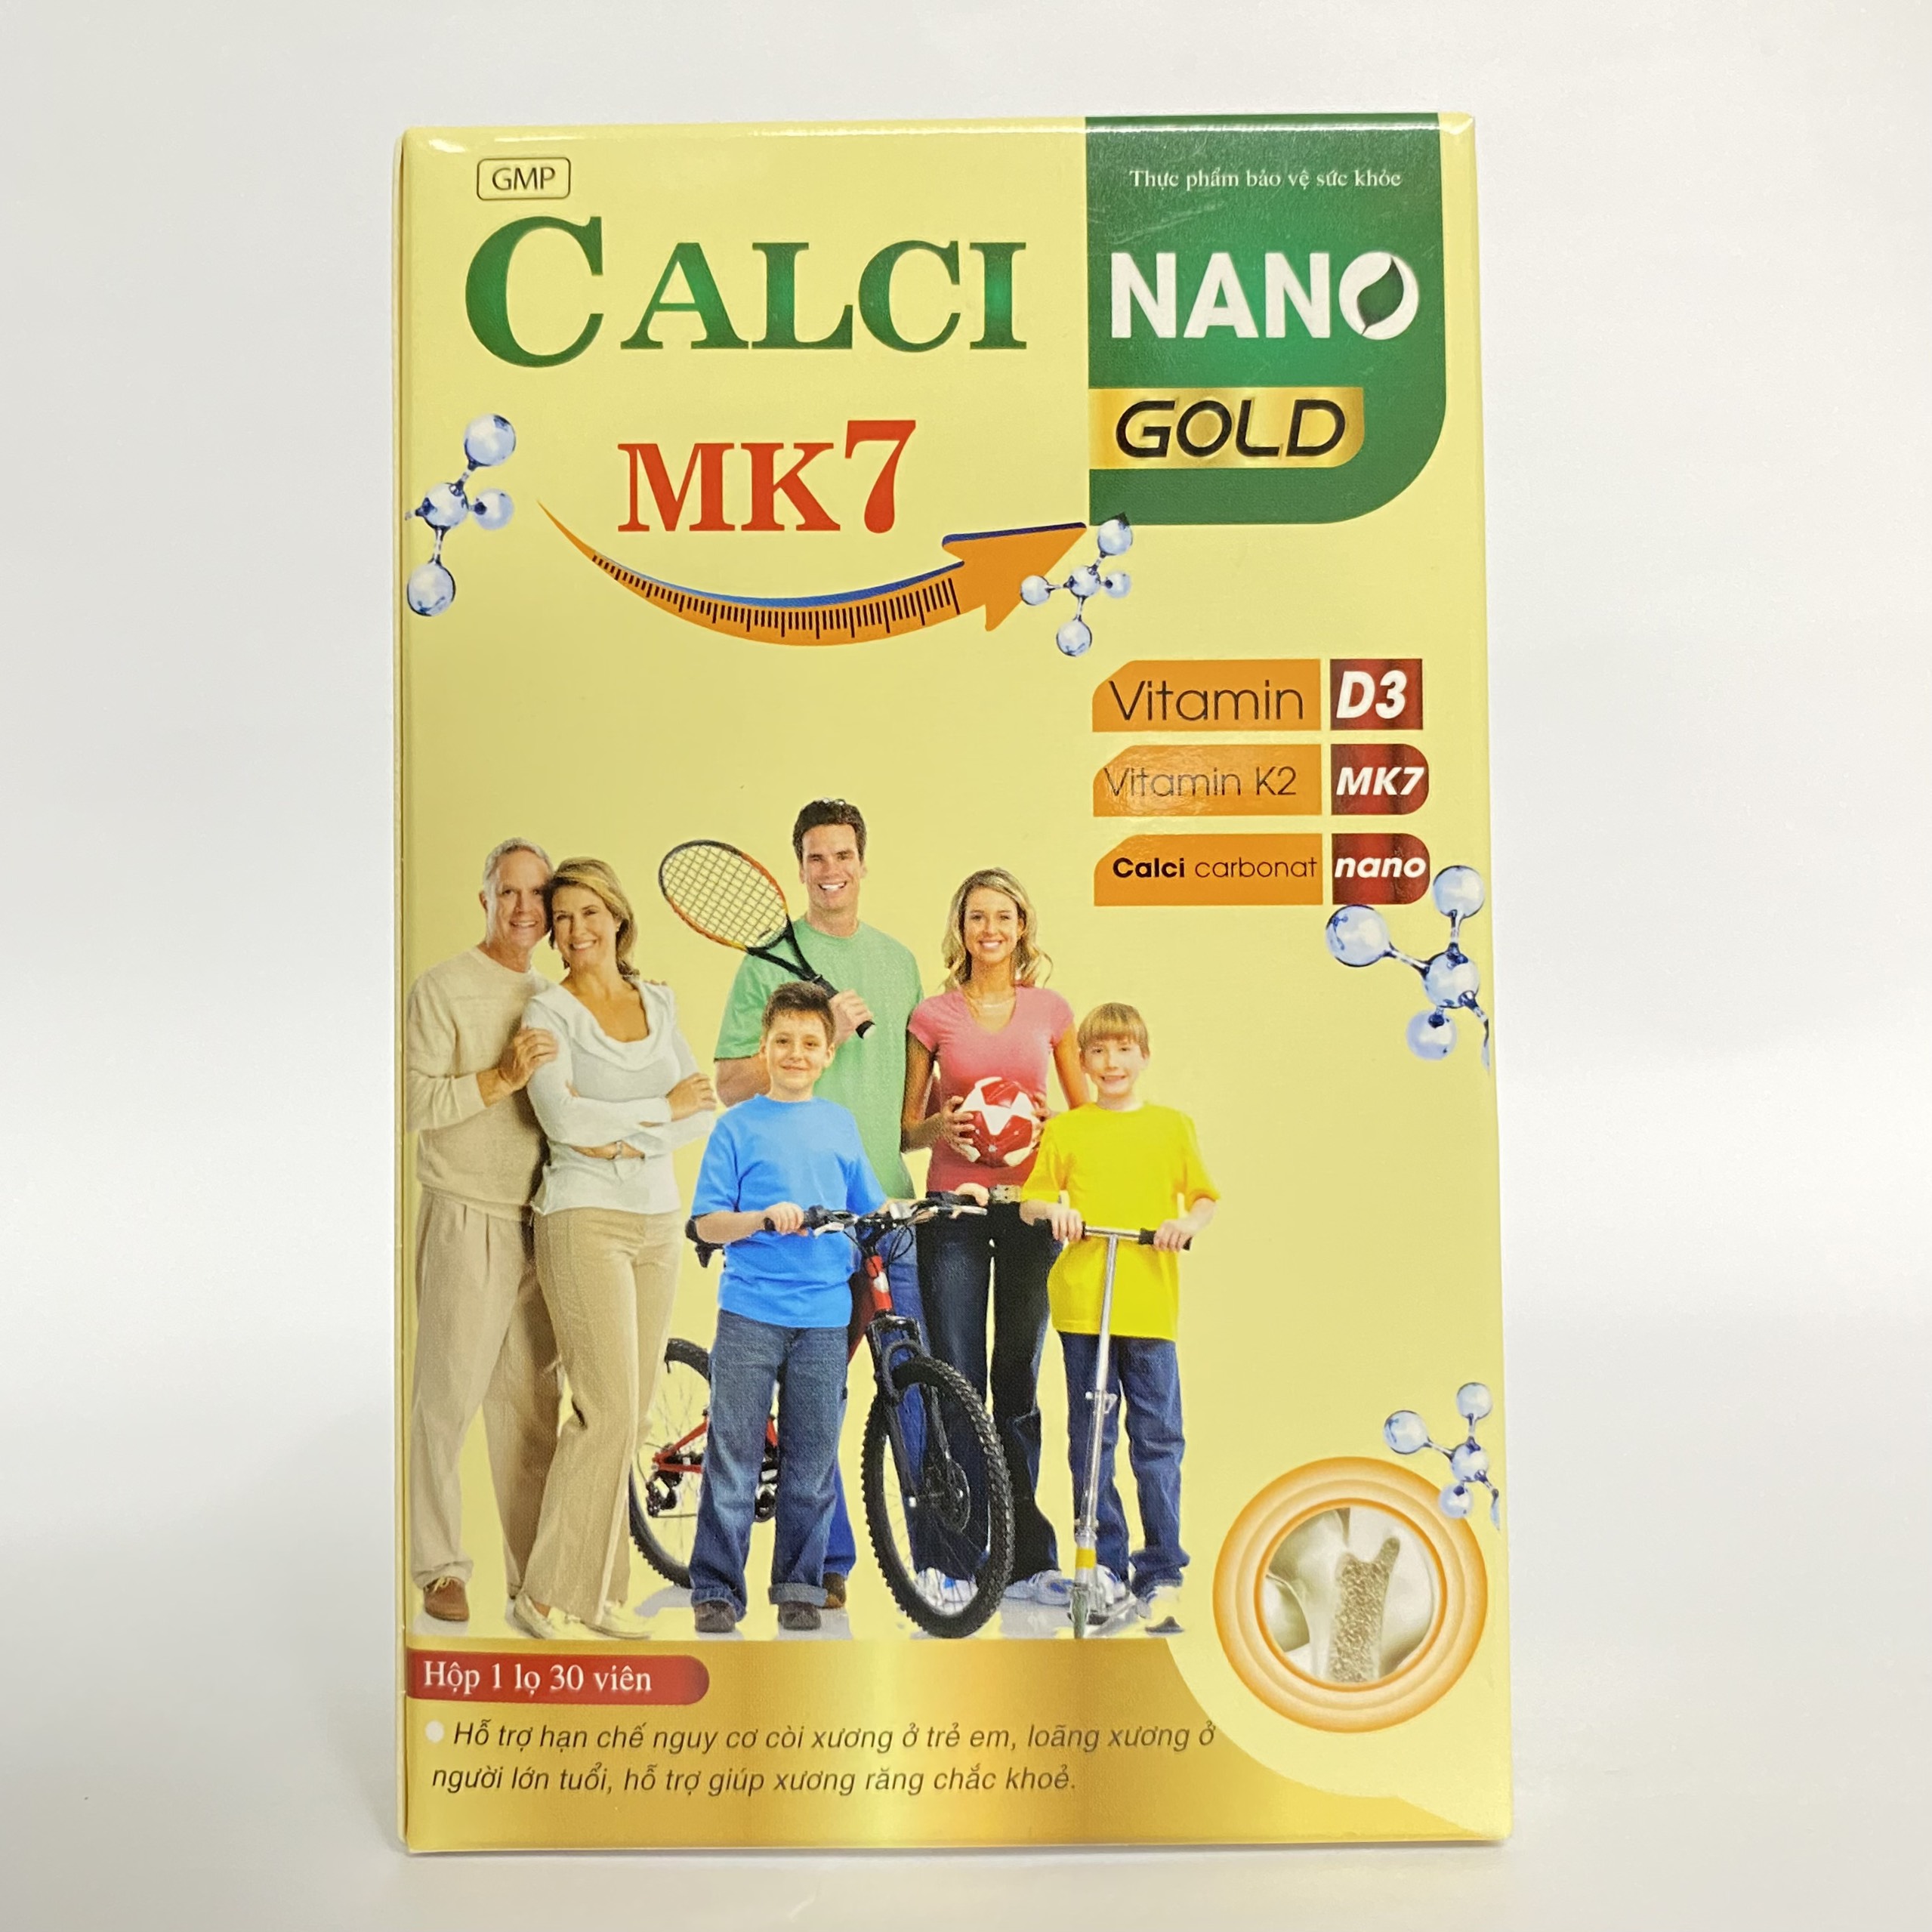 Canxi Nano MK7 hỗ trợ tăng chiều cao